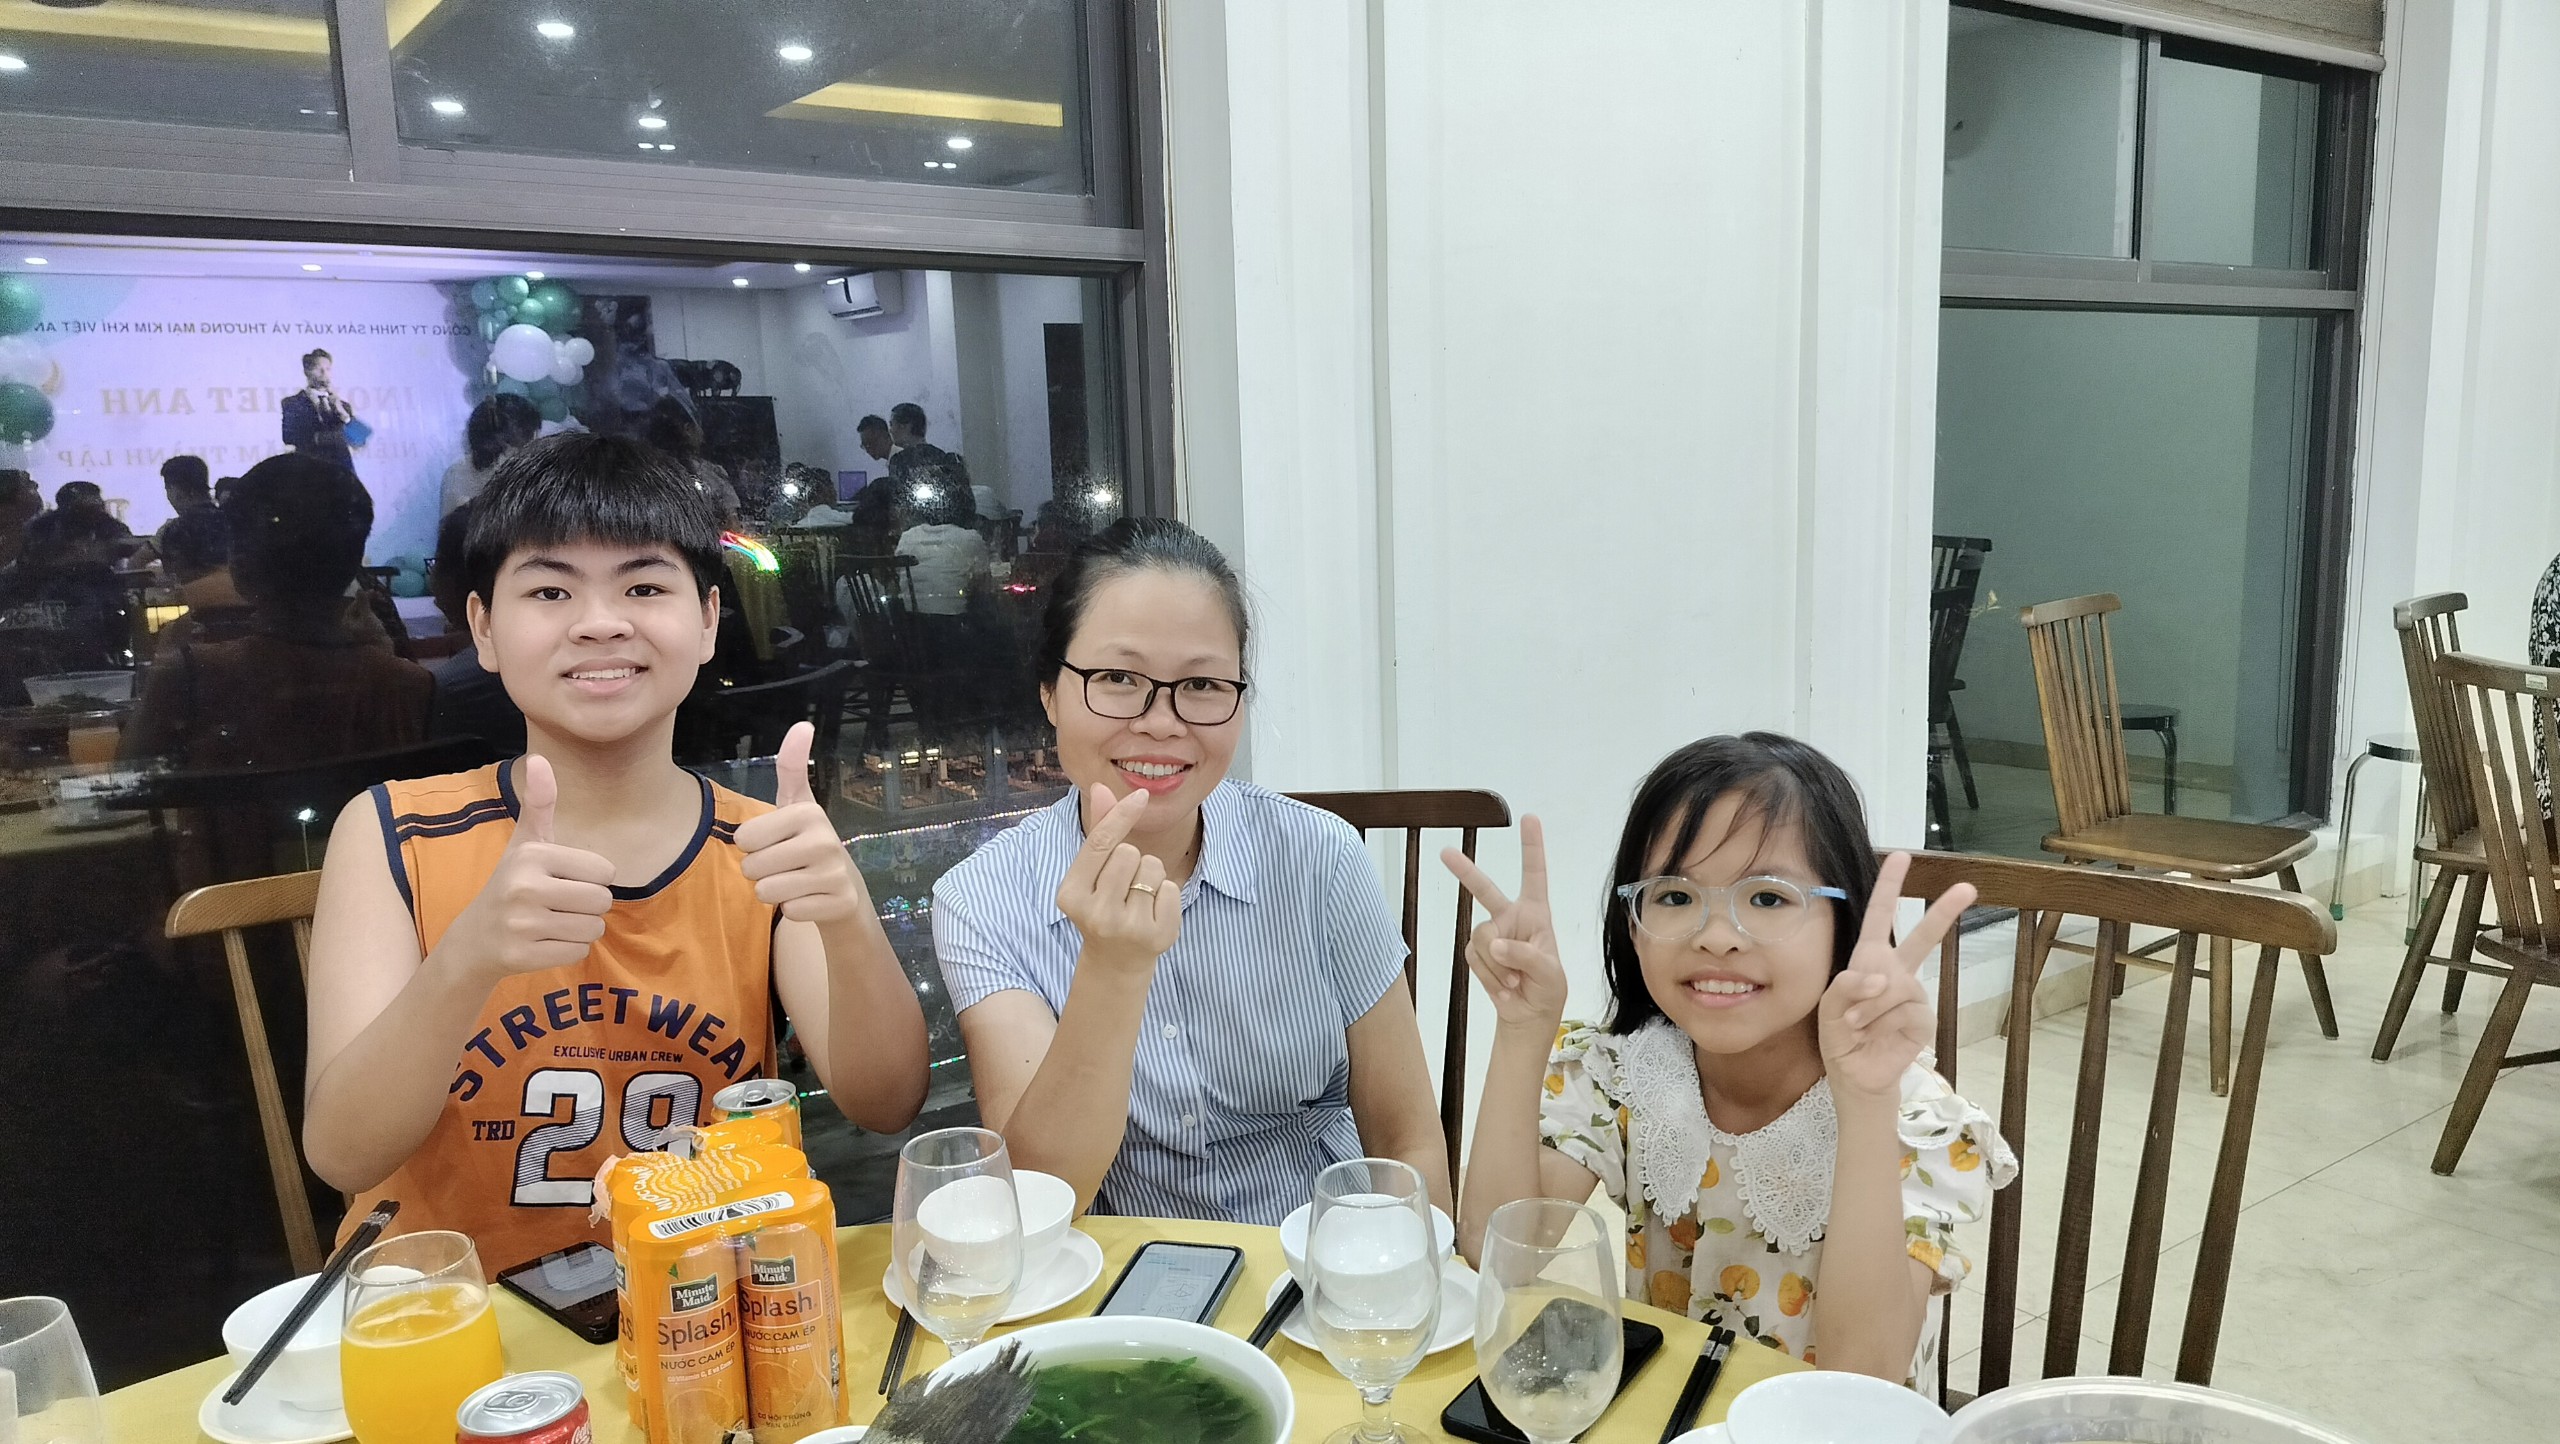 Kim Khí Việt Anh - Tiệc vui nào